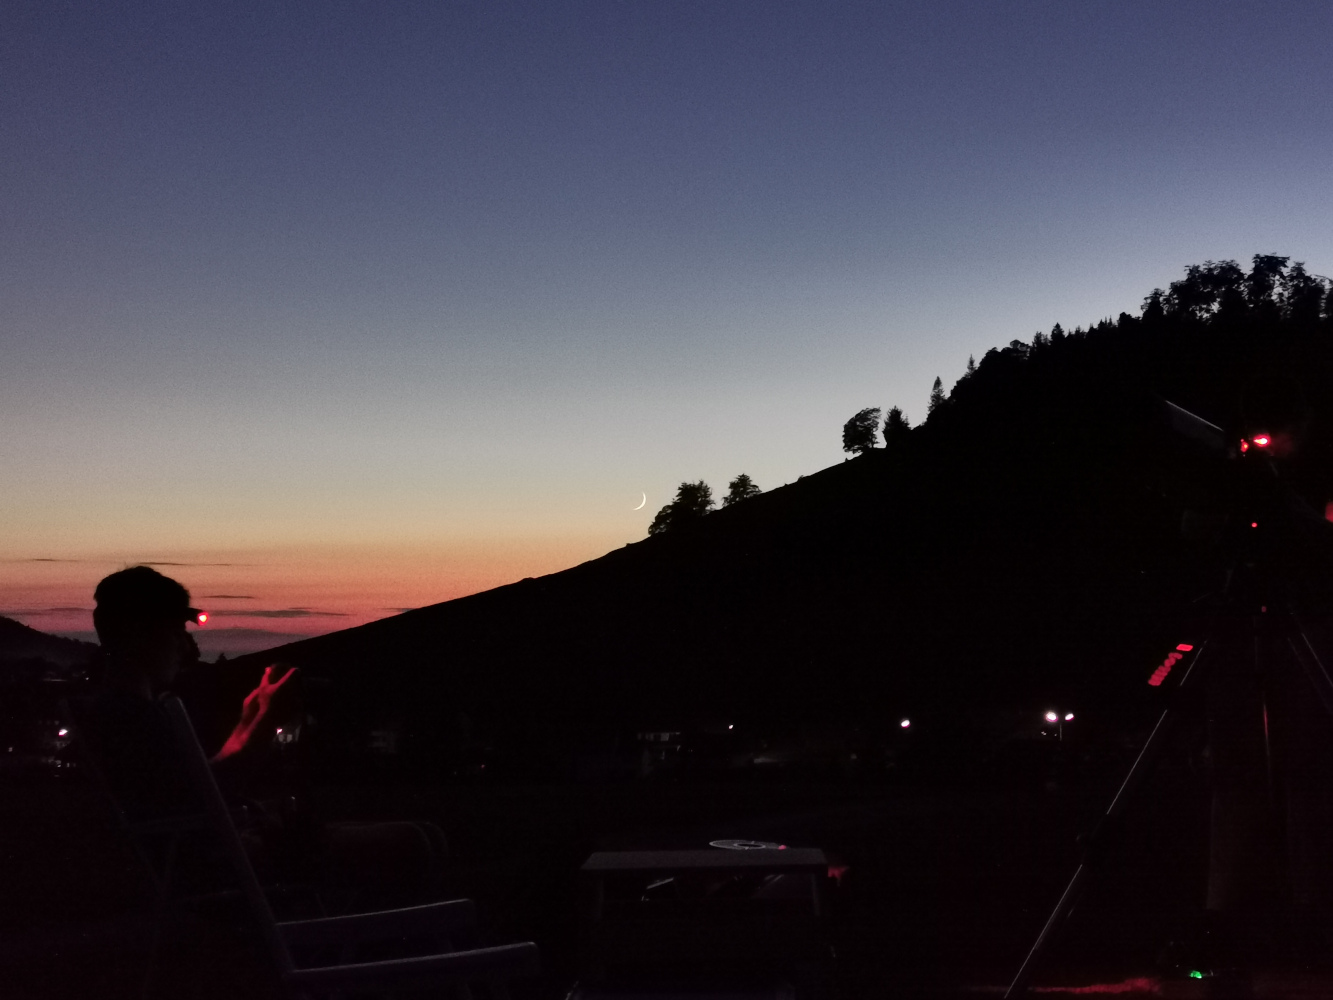 Dämmerung in Gersbach, Farben des Himmels von Dunkelblau bis Orange, Mondsichel über dunklem Horizont - Skyline wie Scherenschnitt, im Vordergrund Schüler*innen mit Teleskopen. 